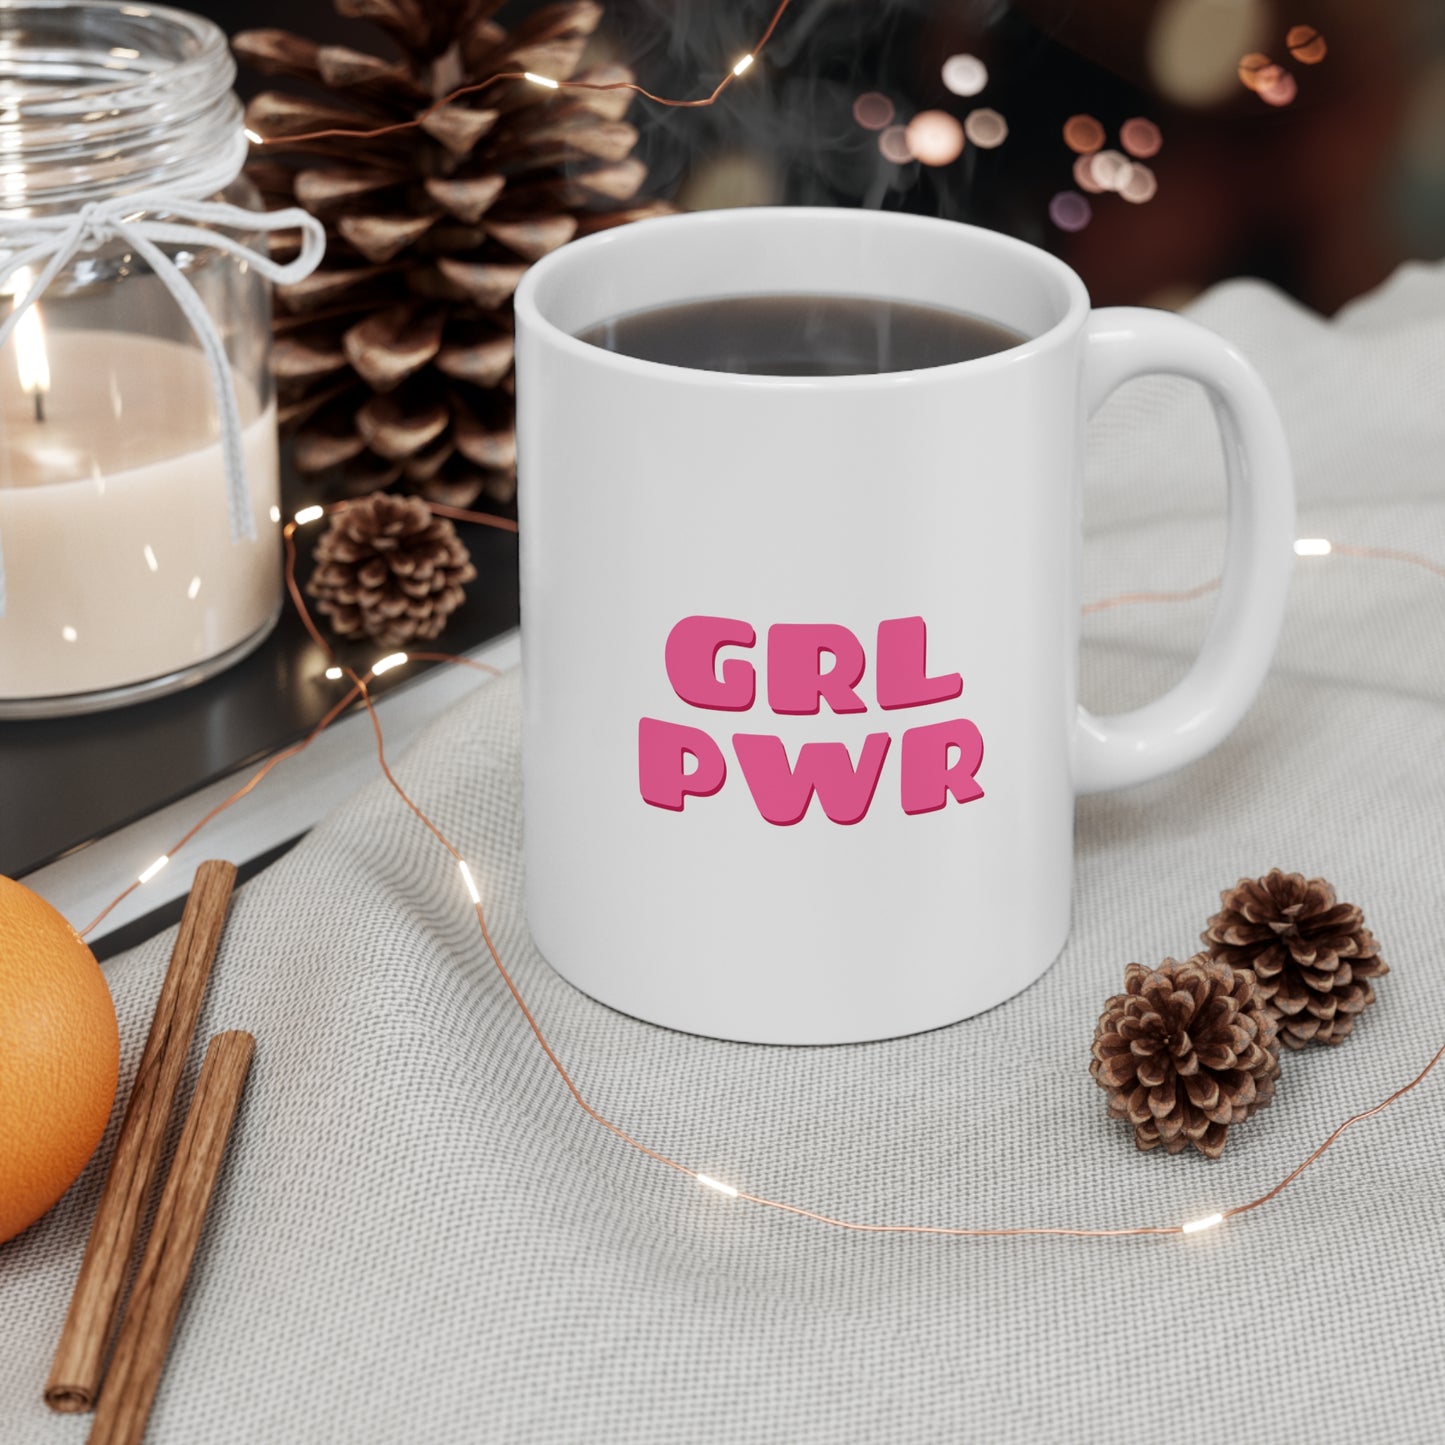 Grl Power Coffee Mug 11oz